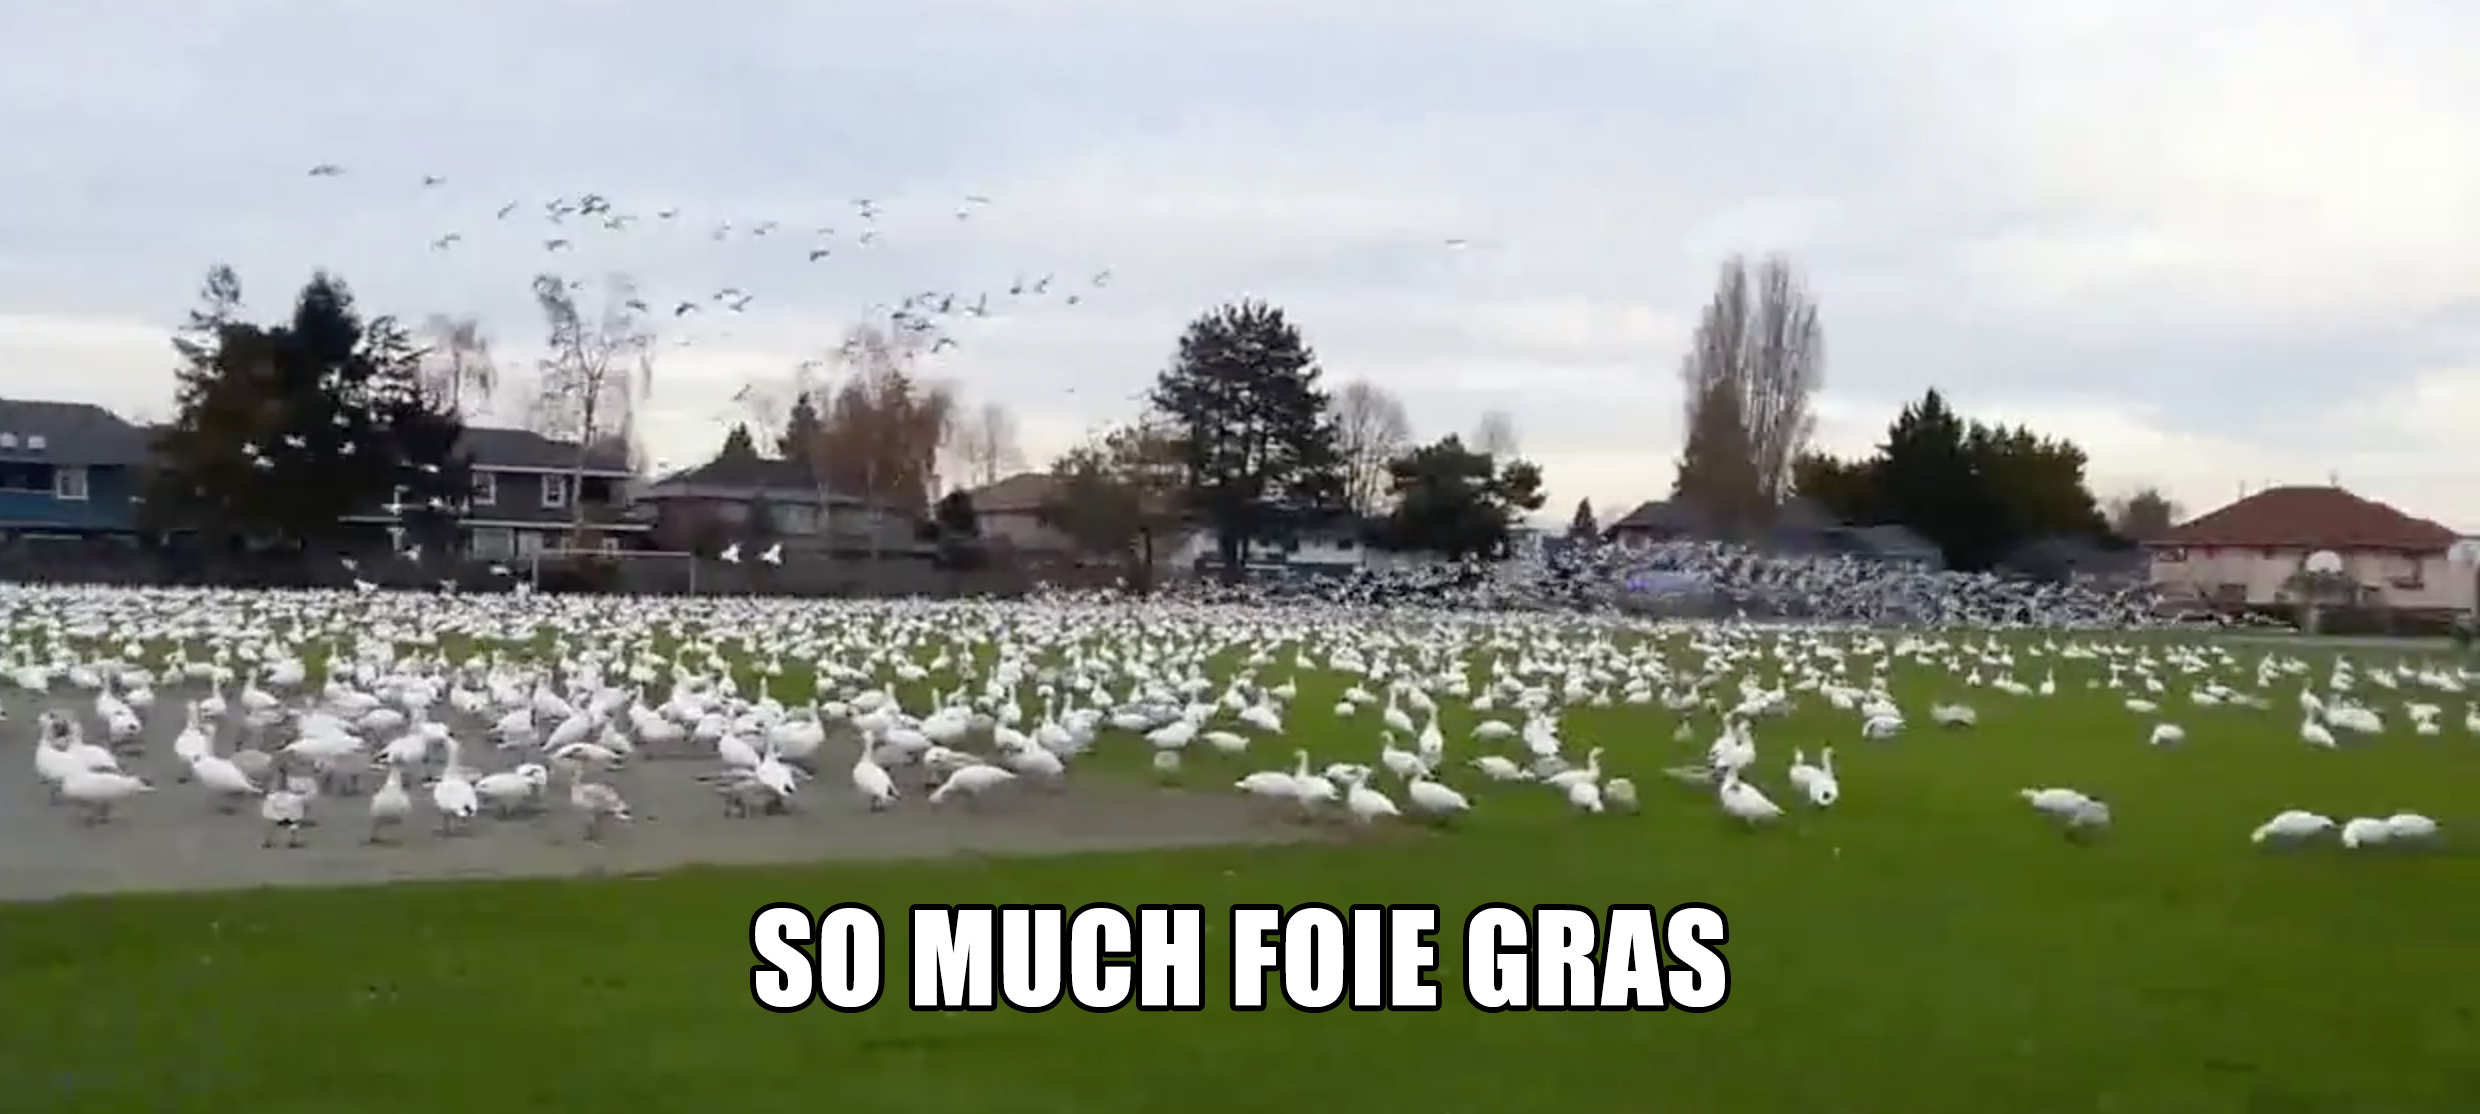 So much foie gras